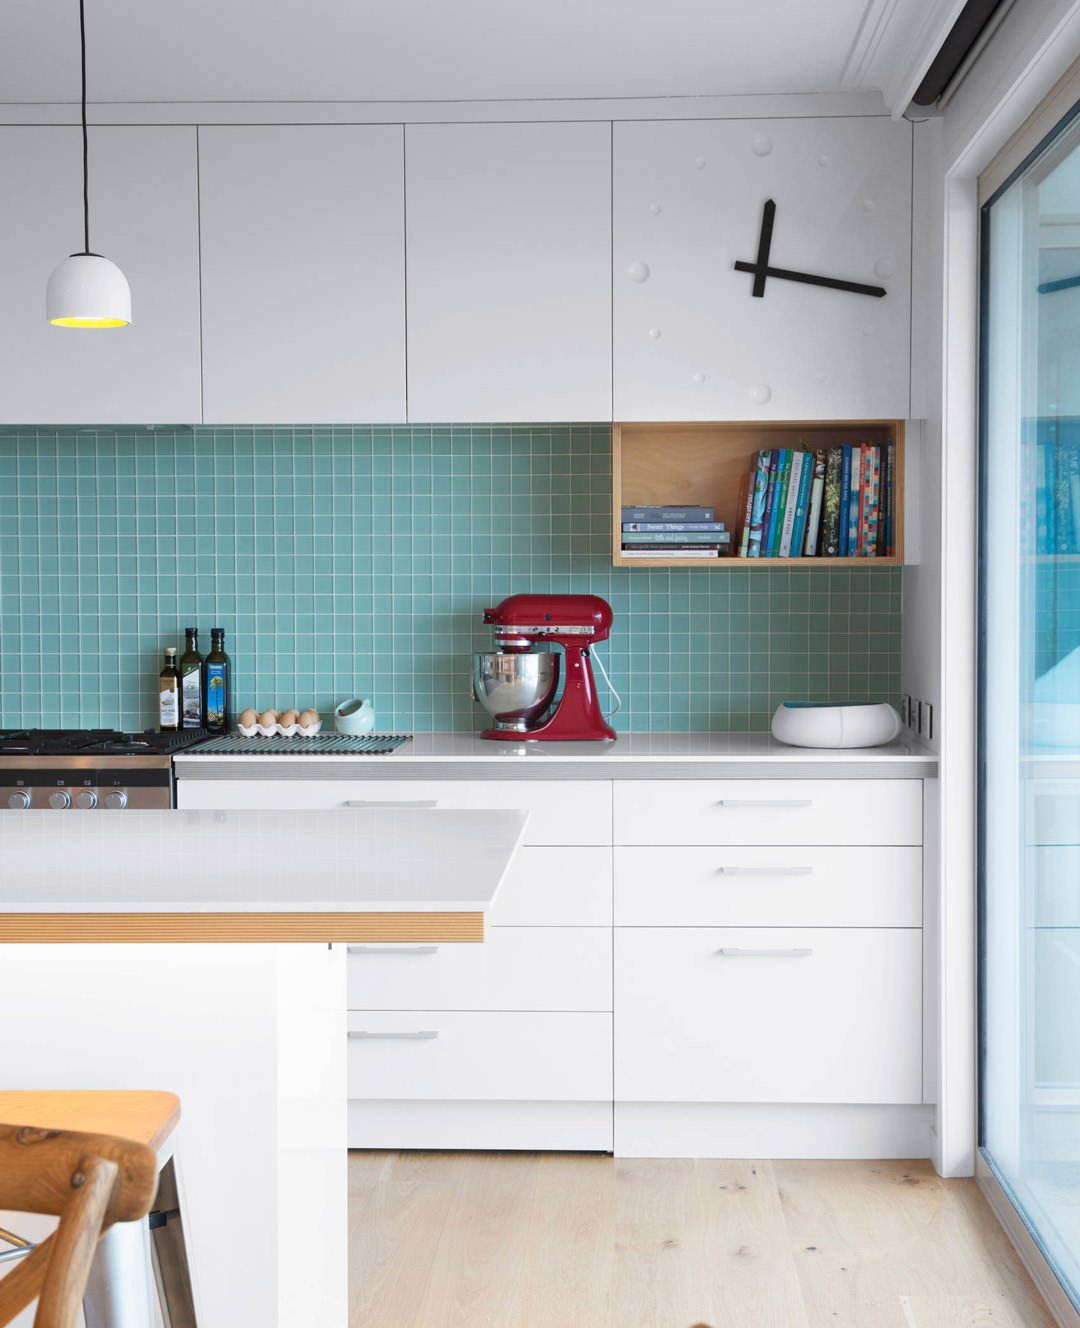 Mosaico blu elegante per questo paraschizzi cucina, abbinato a mobili scandinavi bianchi + legno - idee mattonelle moderne